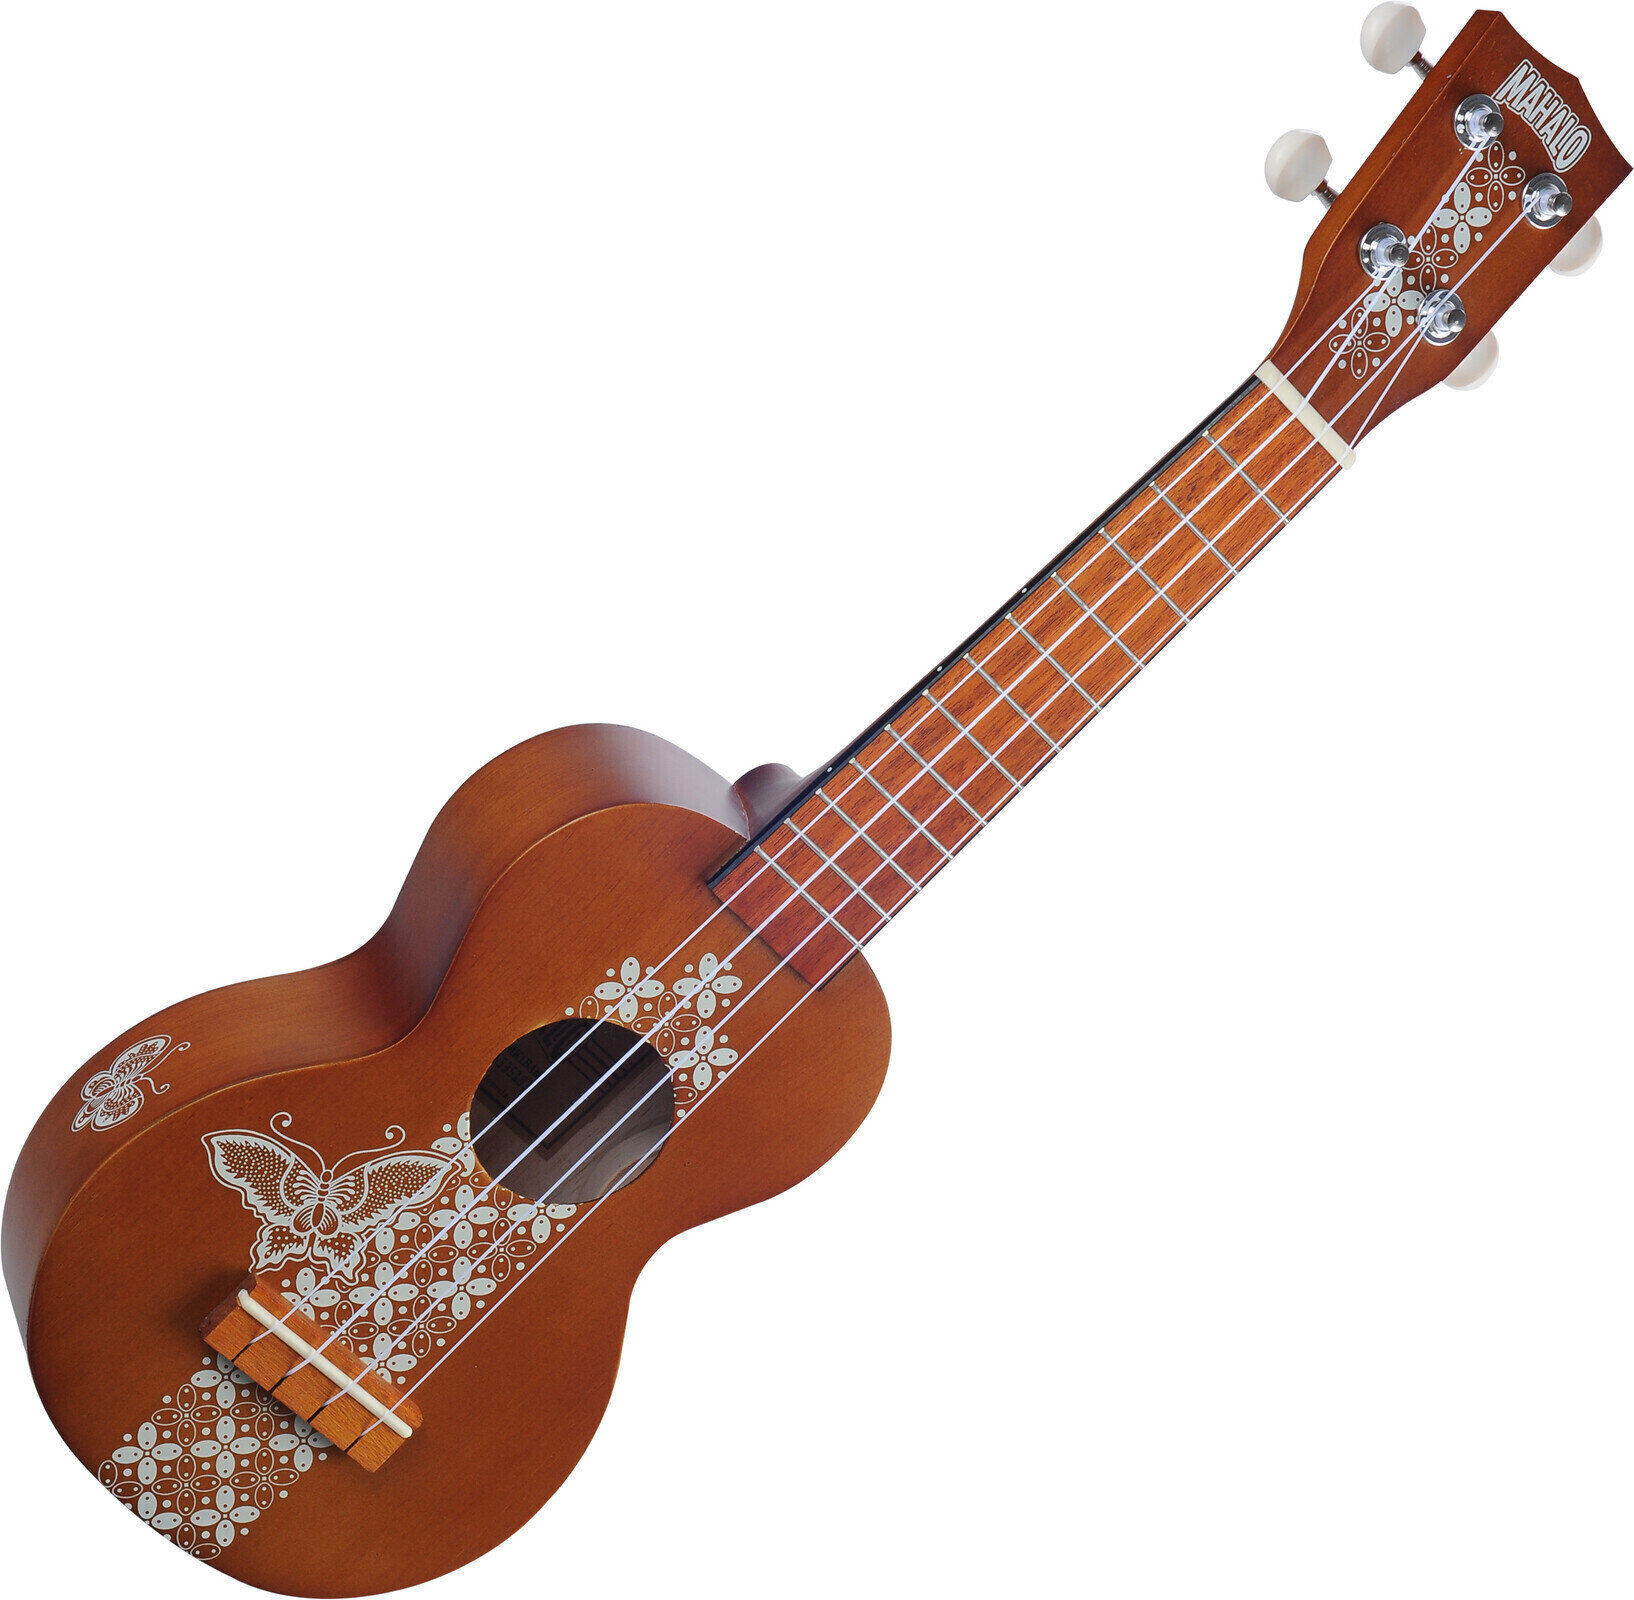 Soprano ukulele Mahalo MK1BA Soprano ukulele Batik Transparent Brown